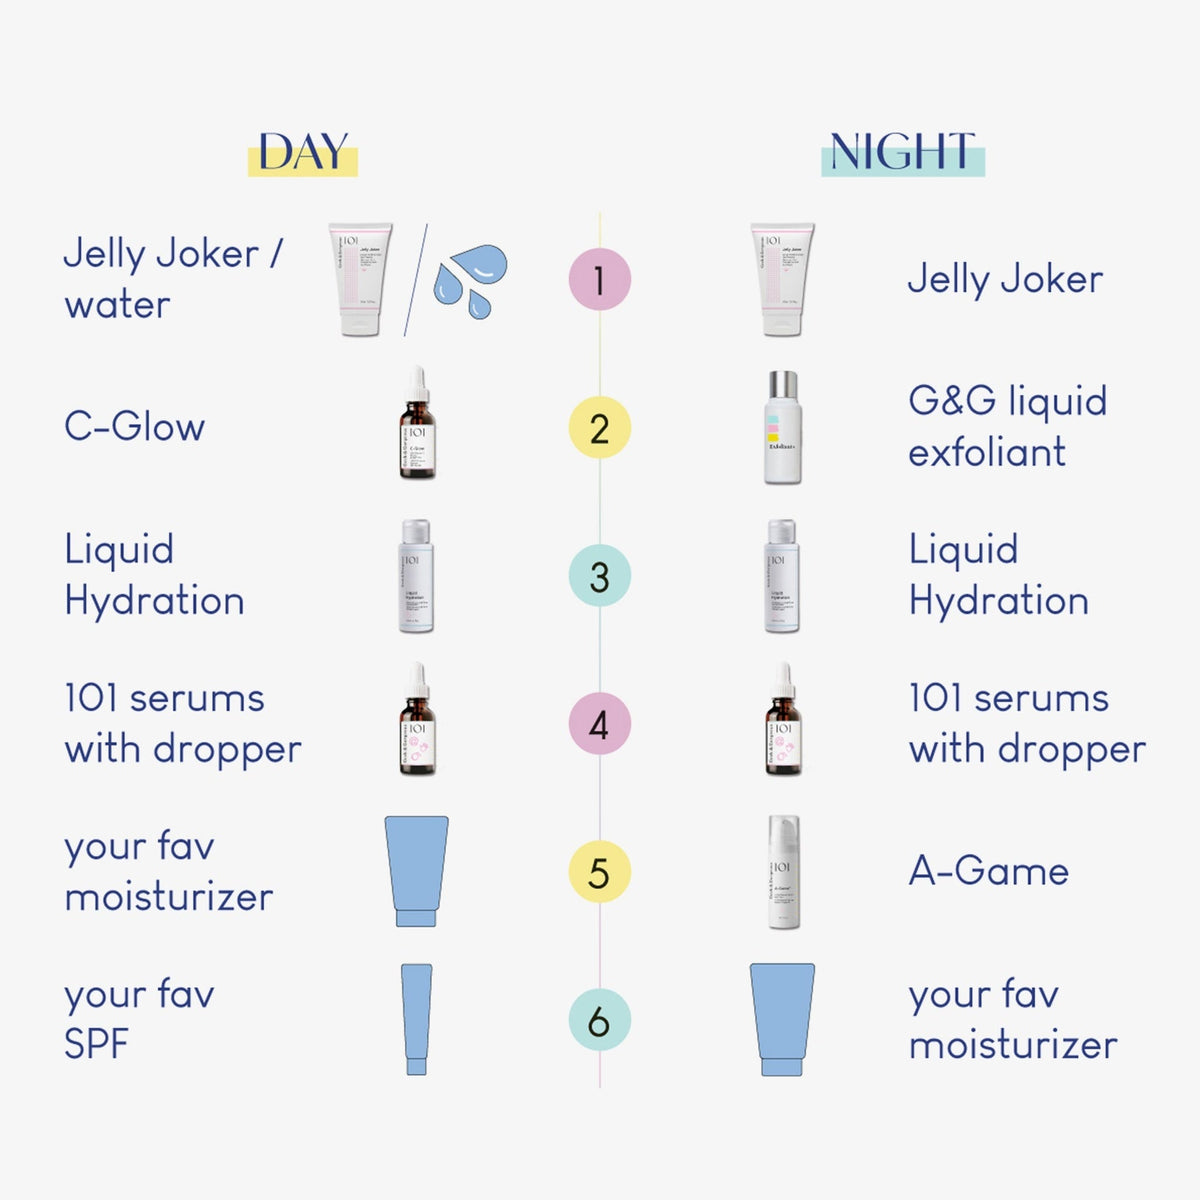 Geek & Gorgeous Liquid Hydration als dritter Schritt der Skincare Routine am Tag und in der Nacht